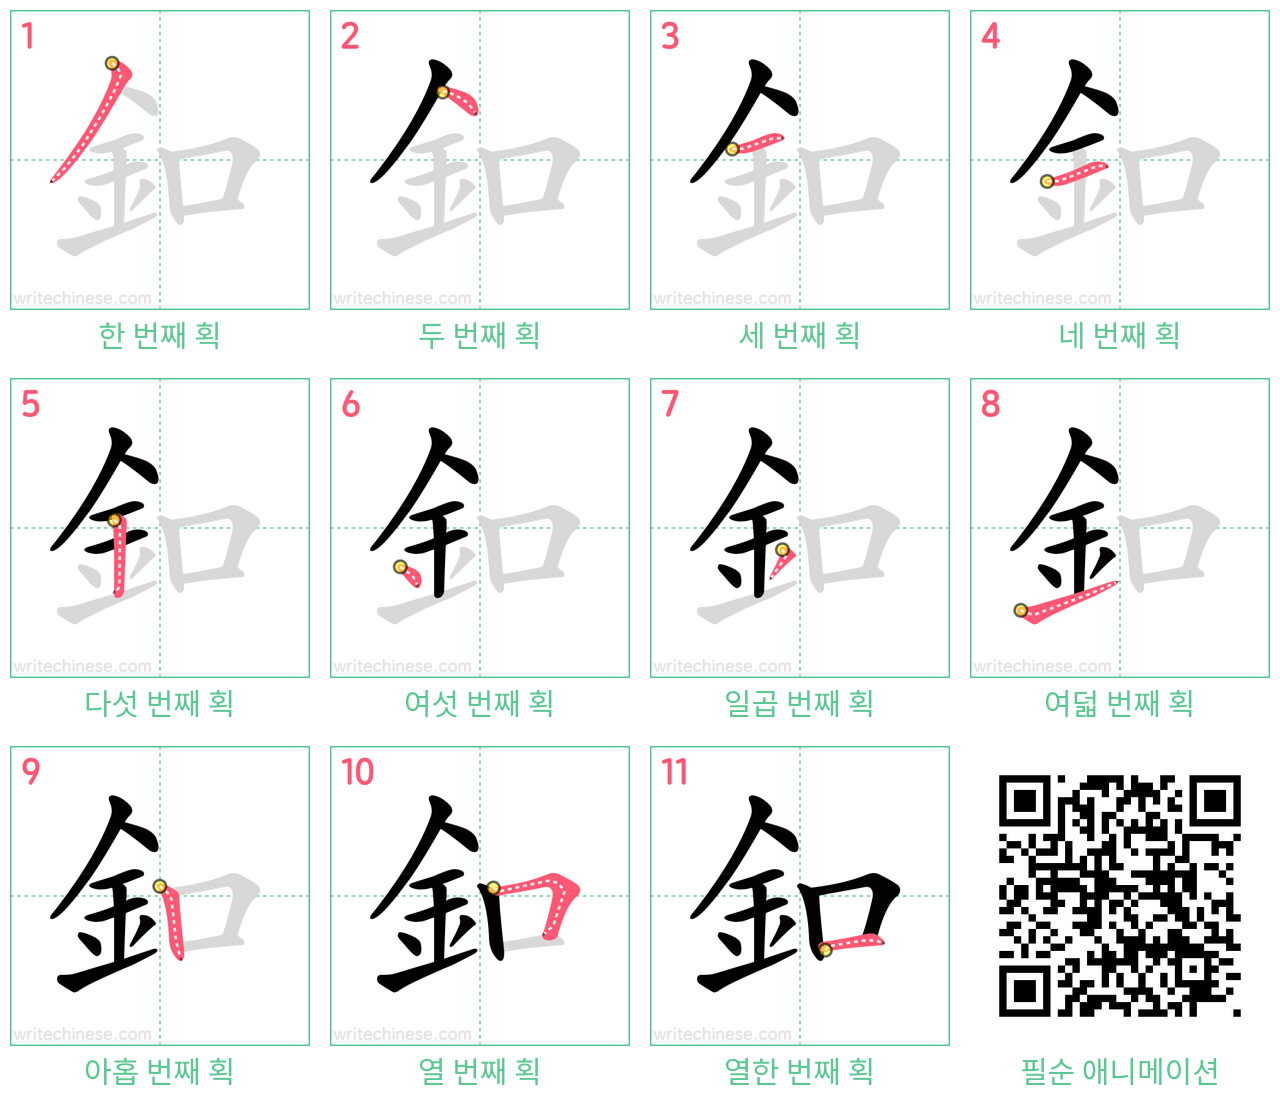 釦 step-by-step stroke order diagrams